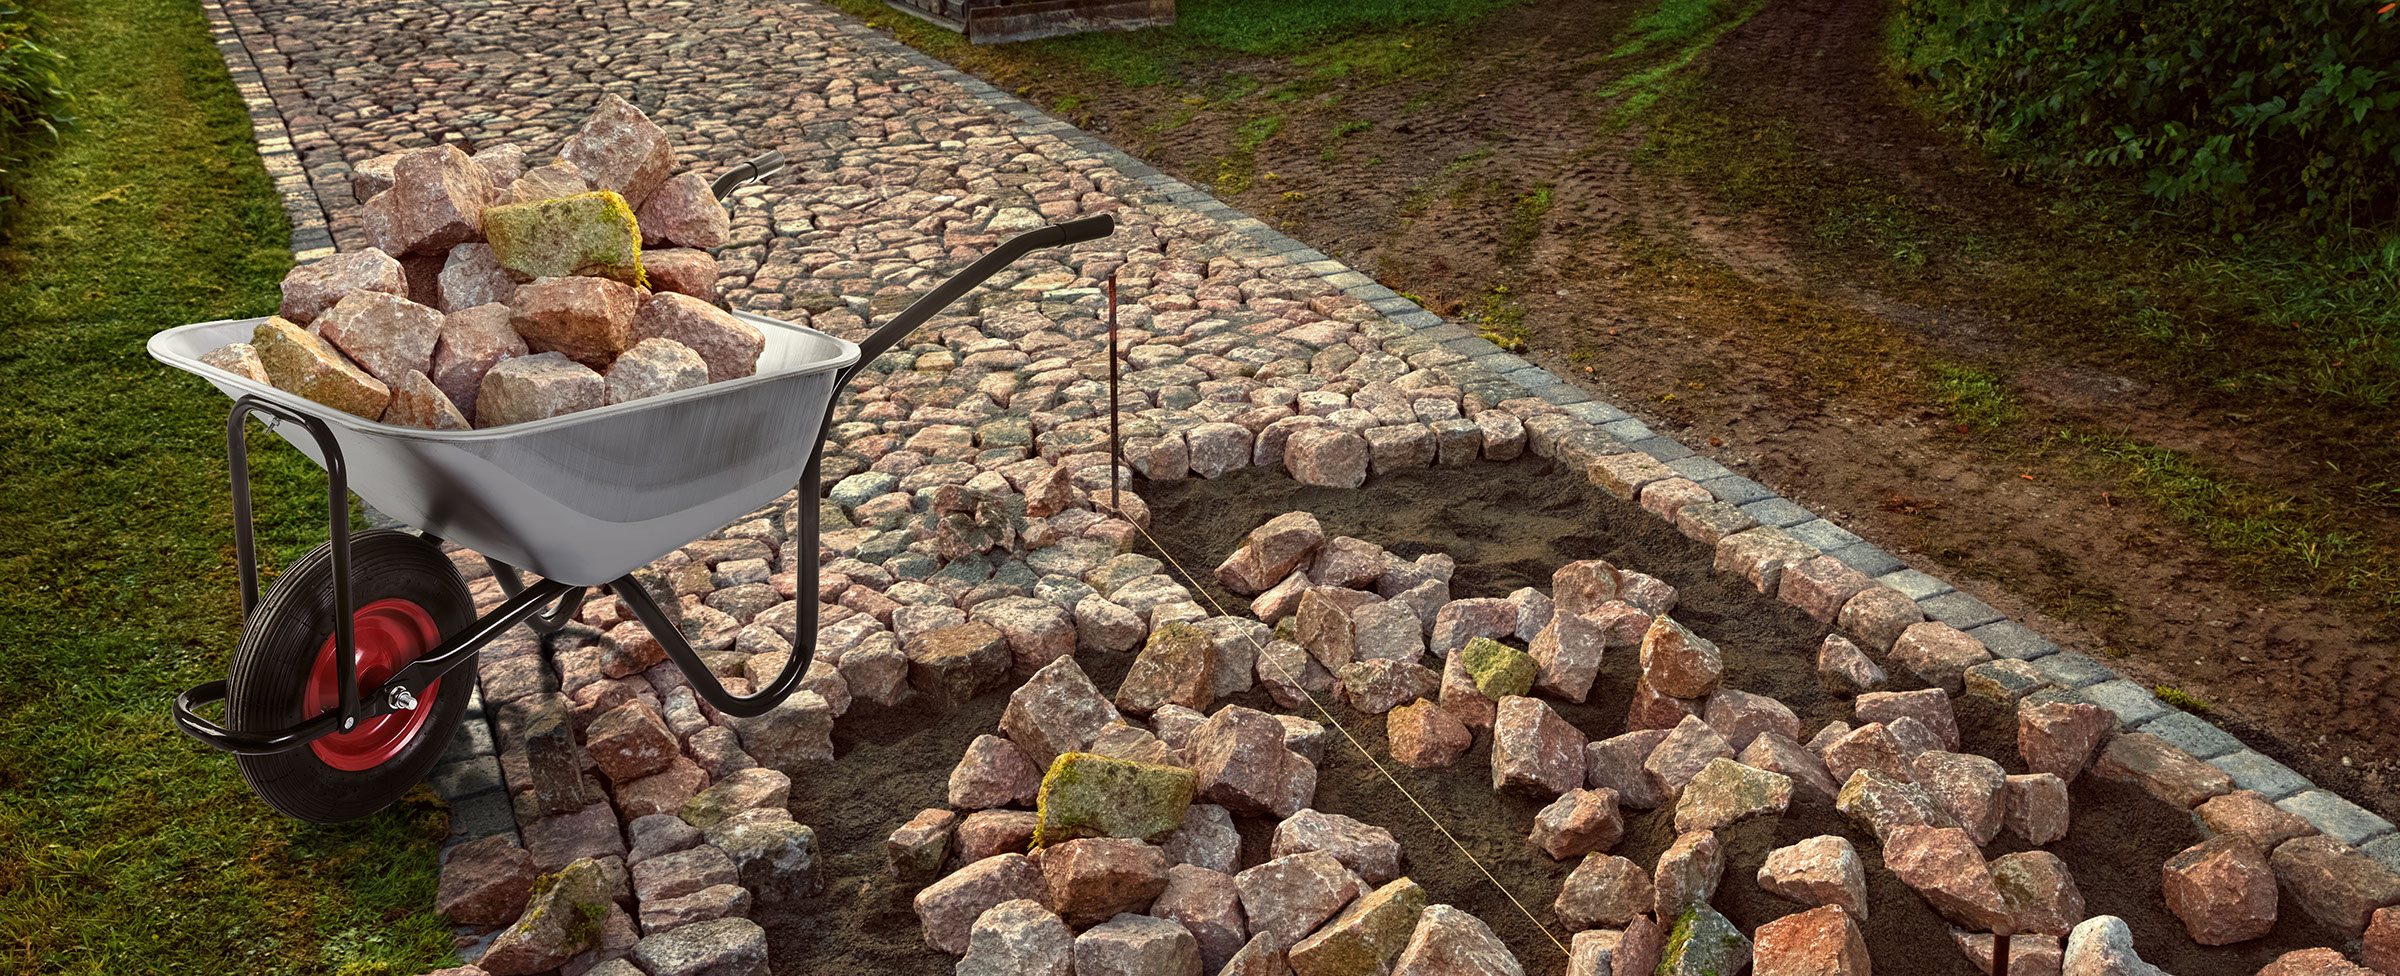 kolečko G21 naložené dláždicími kameny na rozestavěném zahradním chodníku